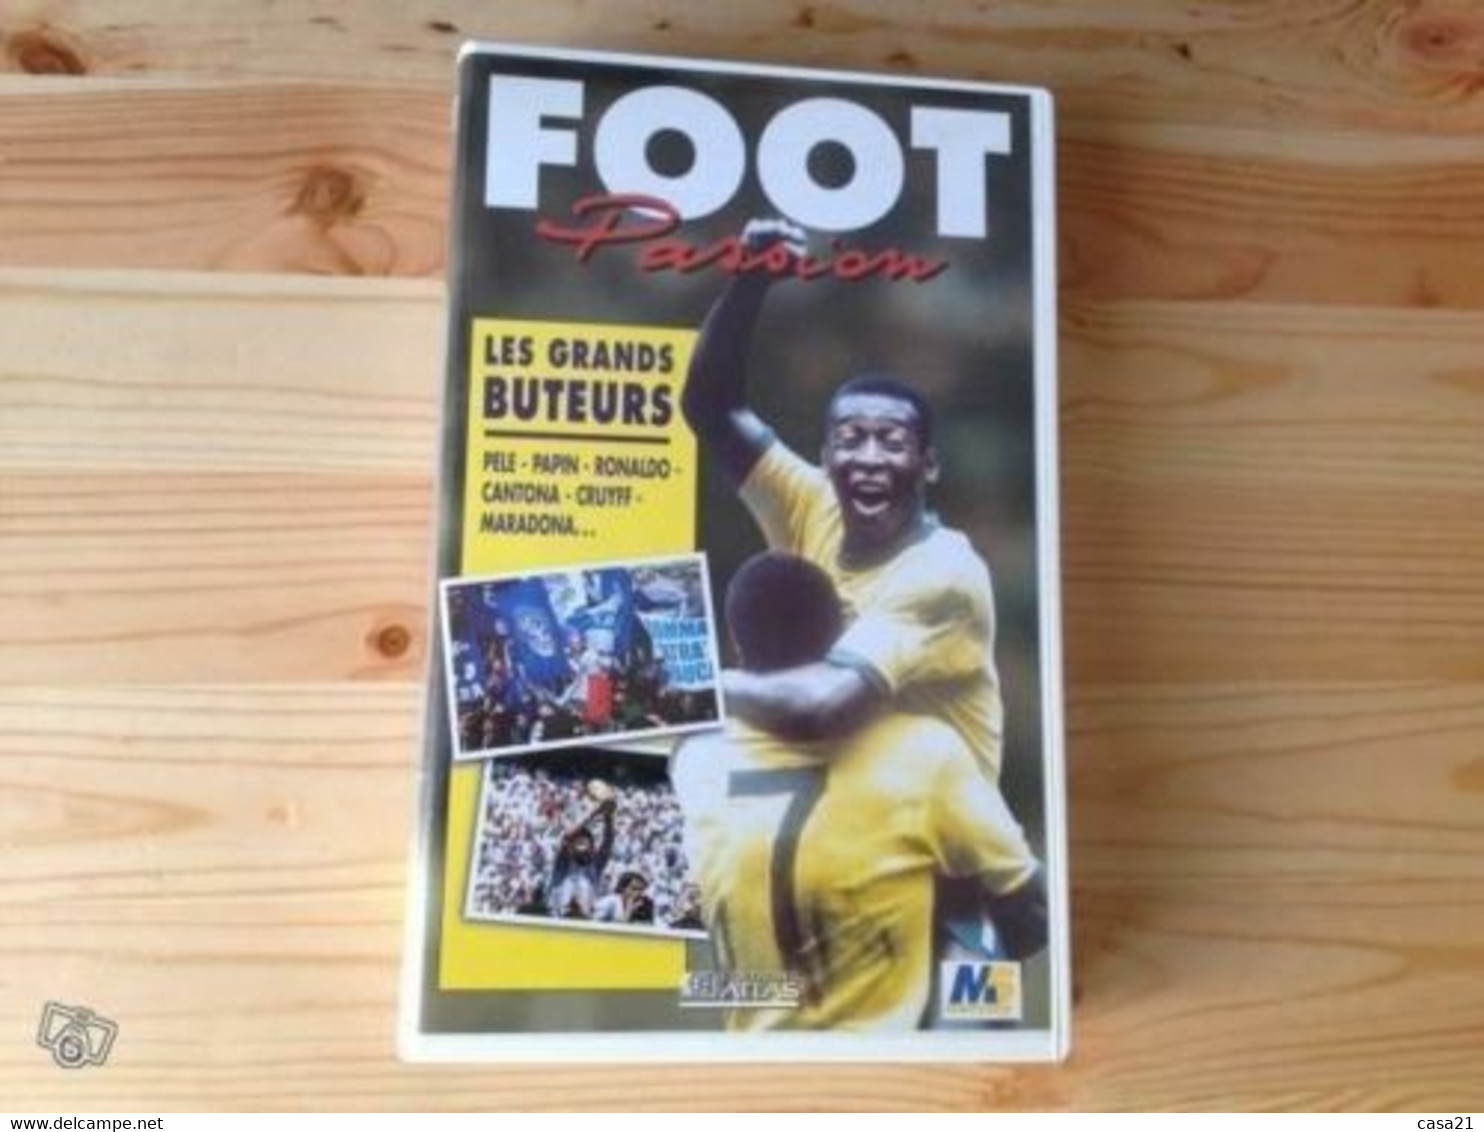 Foot Passion - Les Grands Buteurs (VHS) - Sports